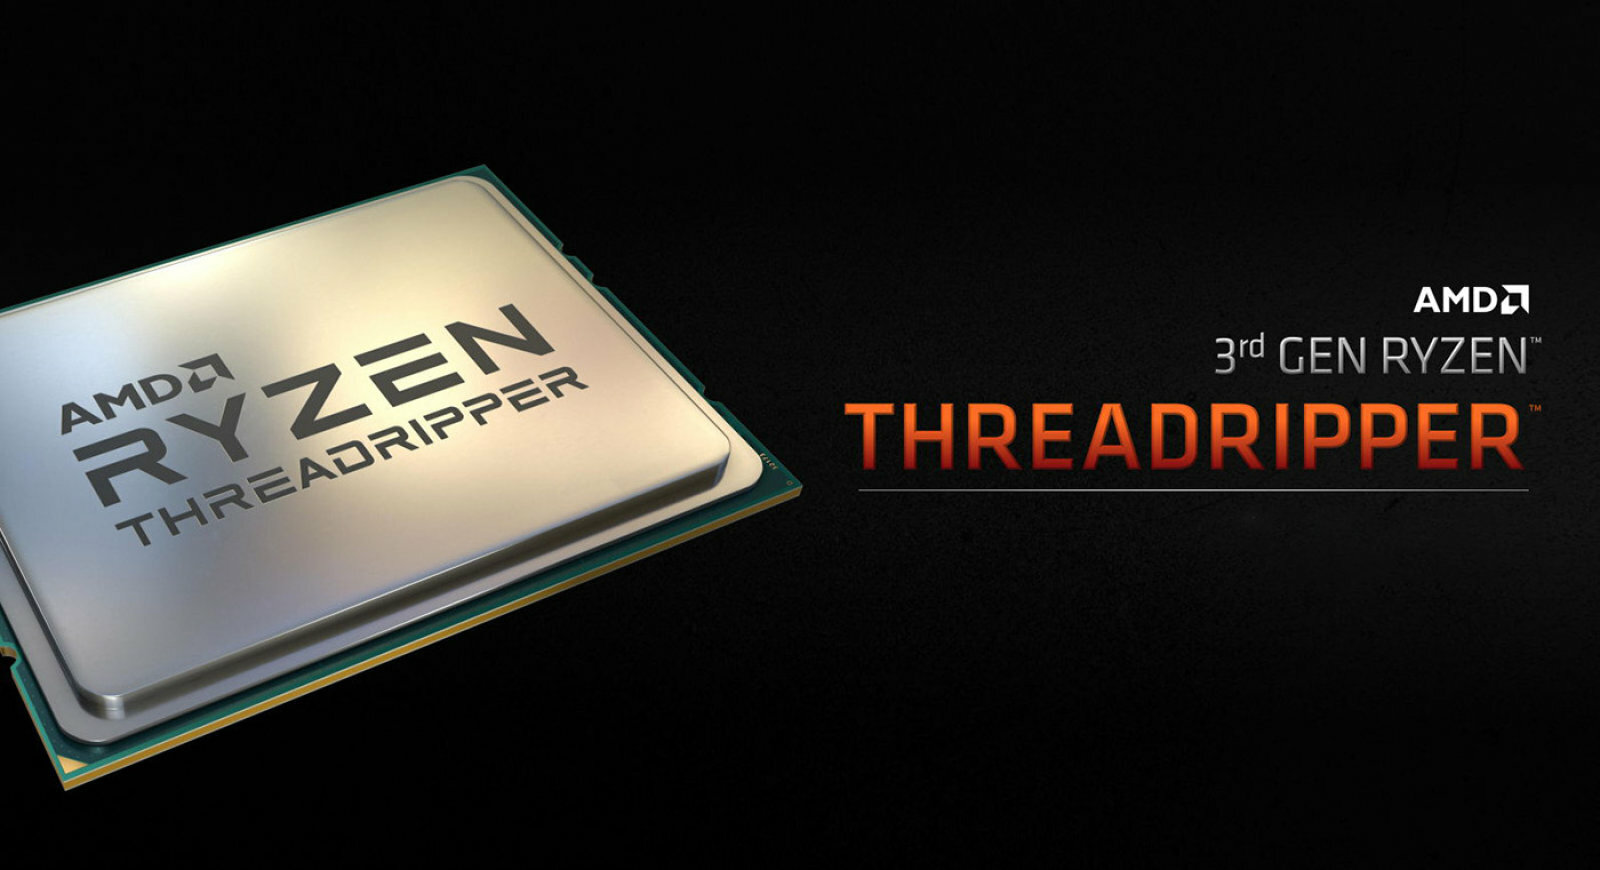 AMD giới thiệu CPU Threadripper thế hệ mới với tận 32 nhân